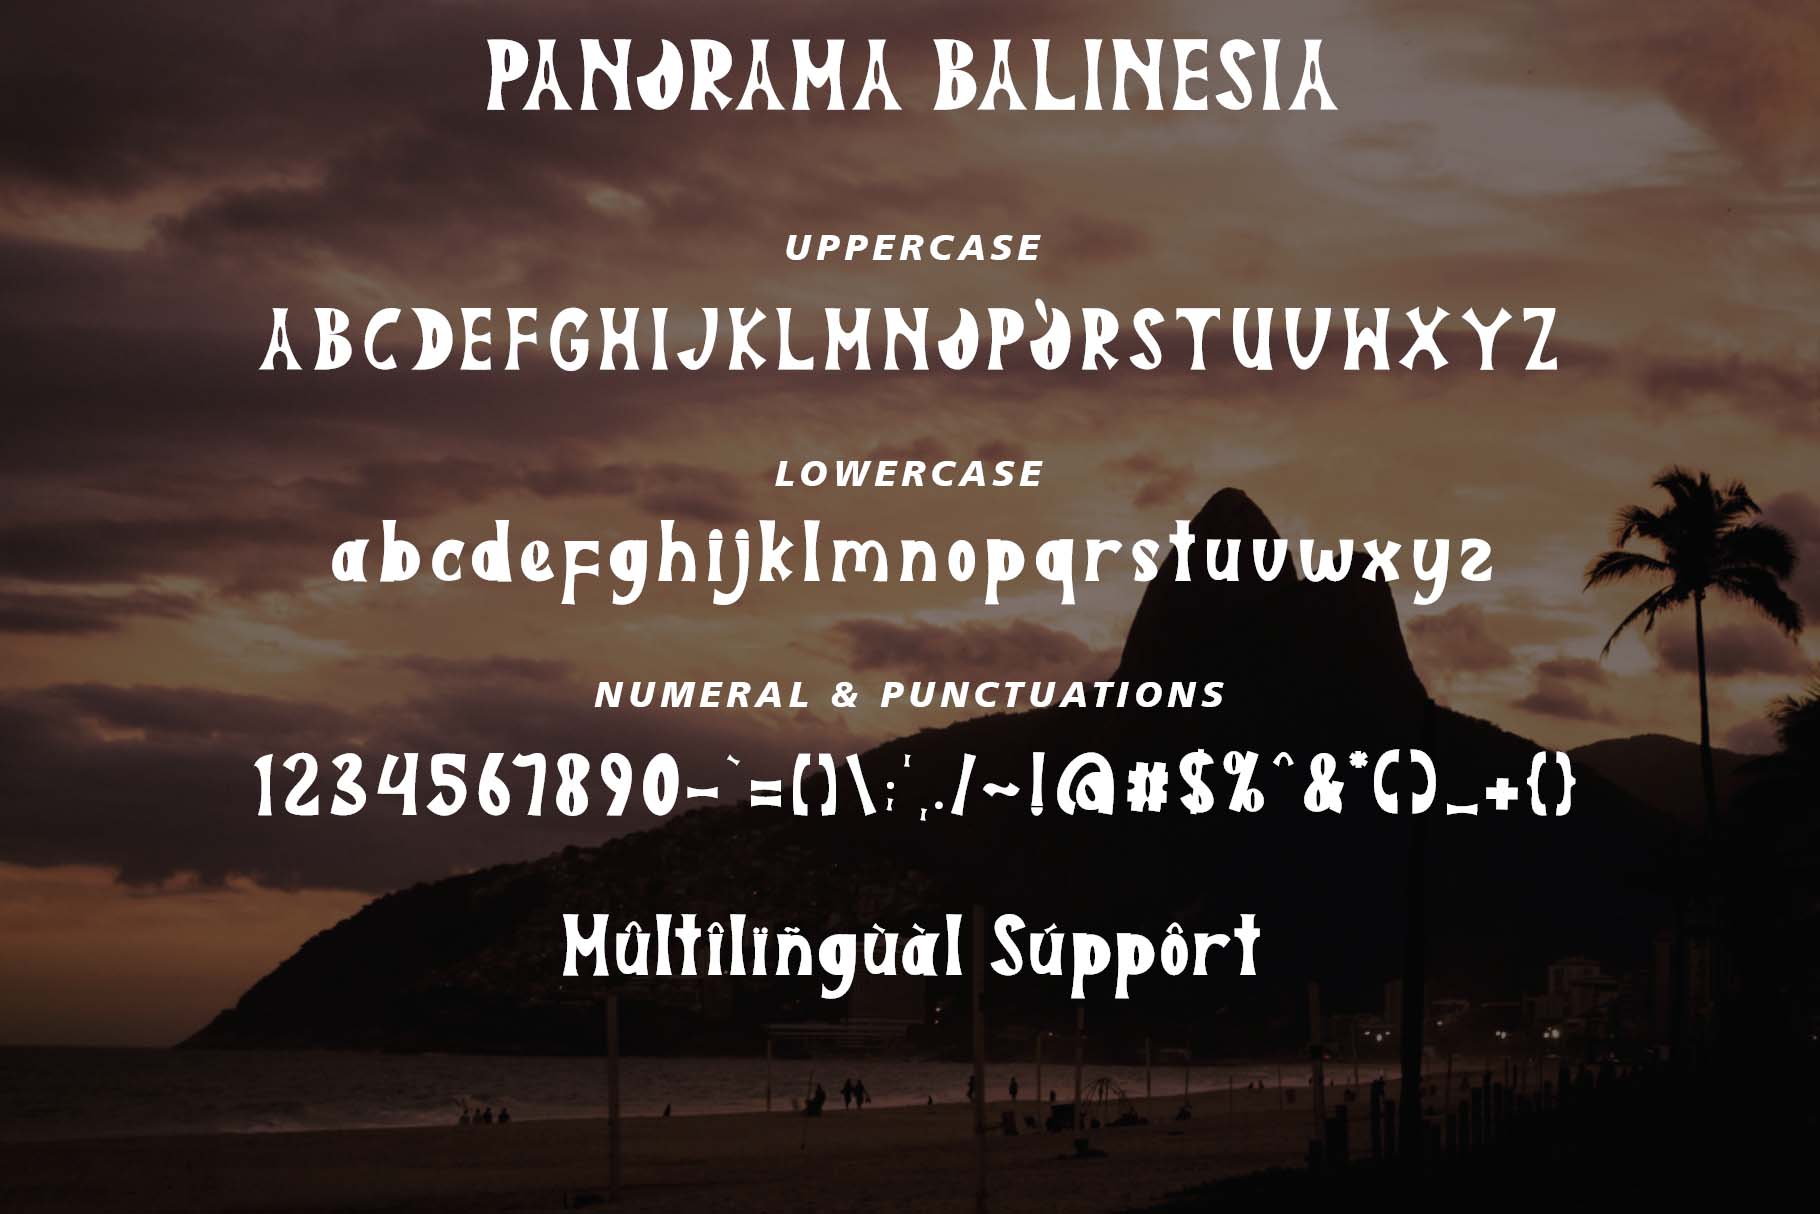 Panorama Balinesia